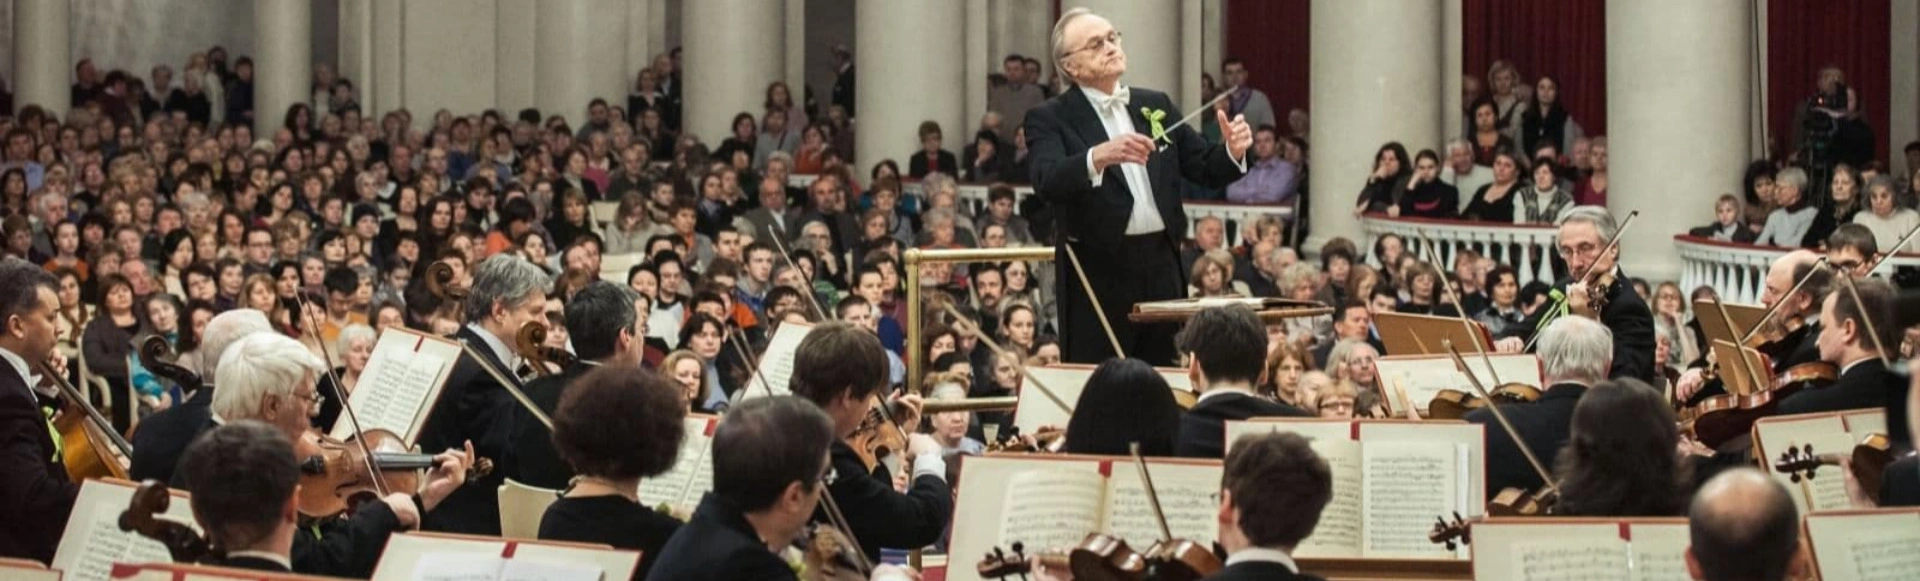 Академический симфонический оркестр филармонии . Петербург: фигуры речи